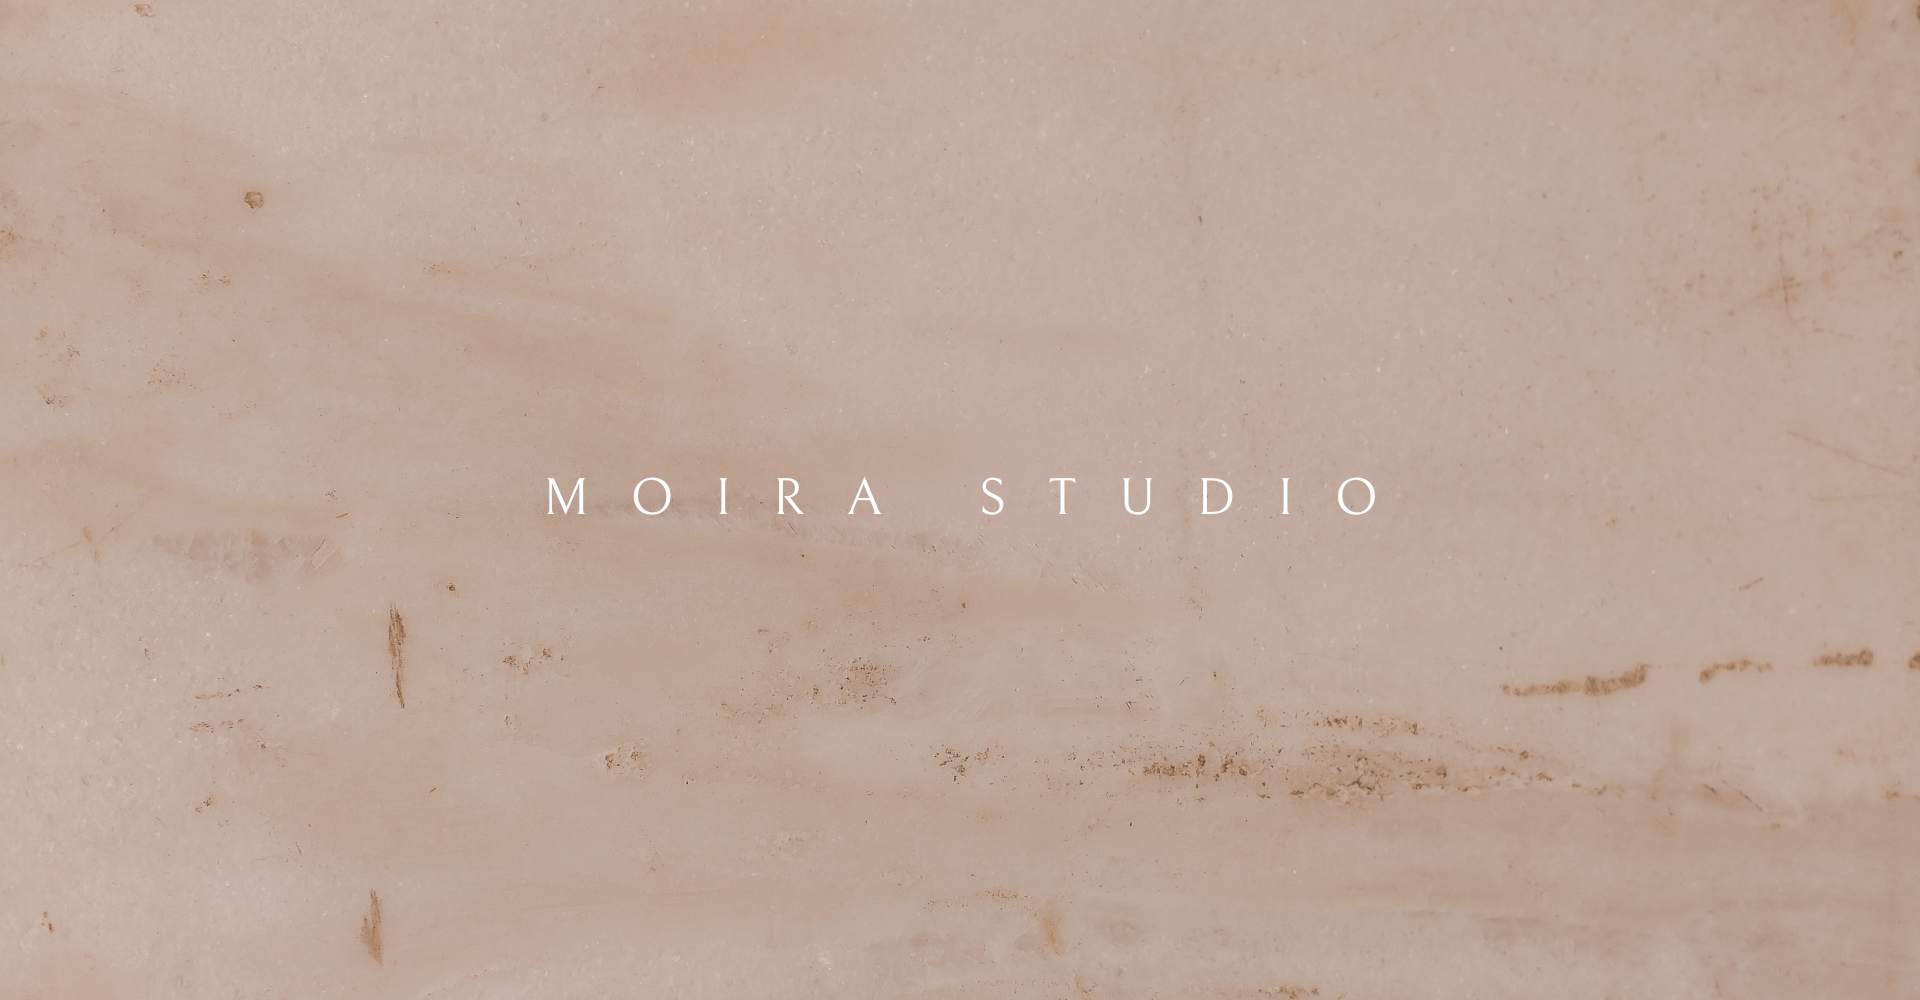 Moira studio